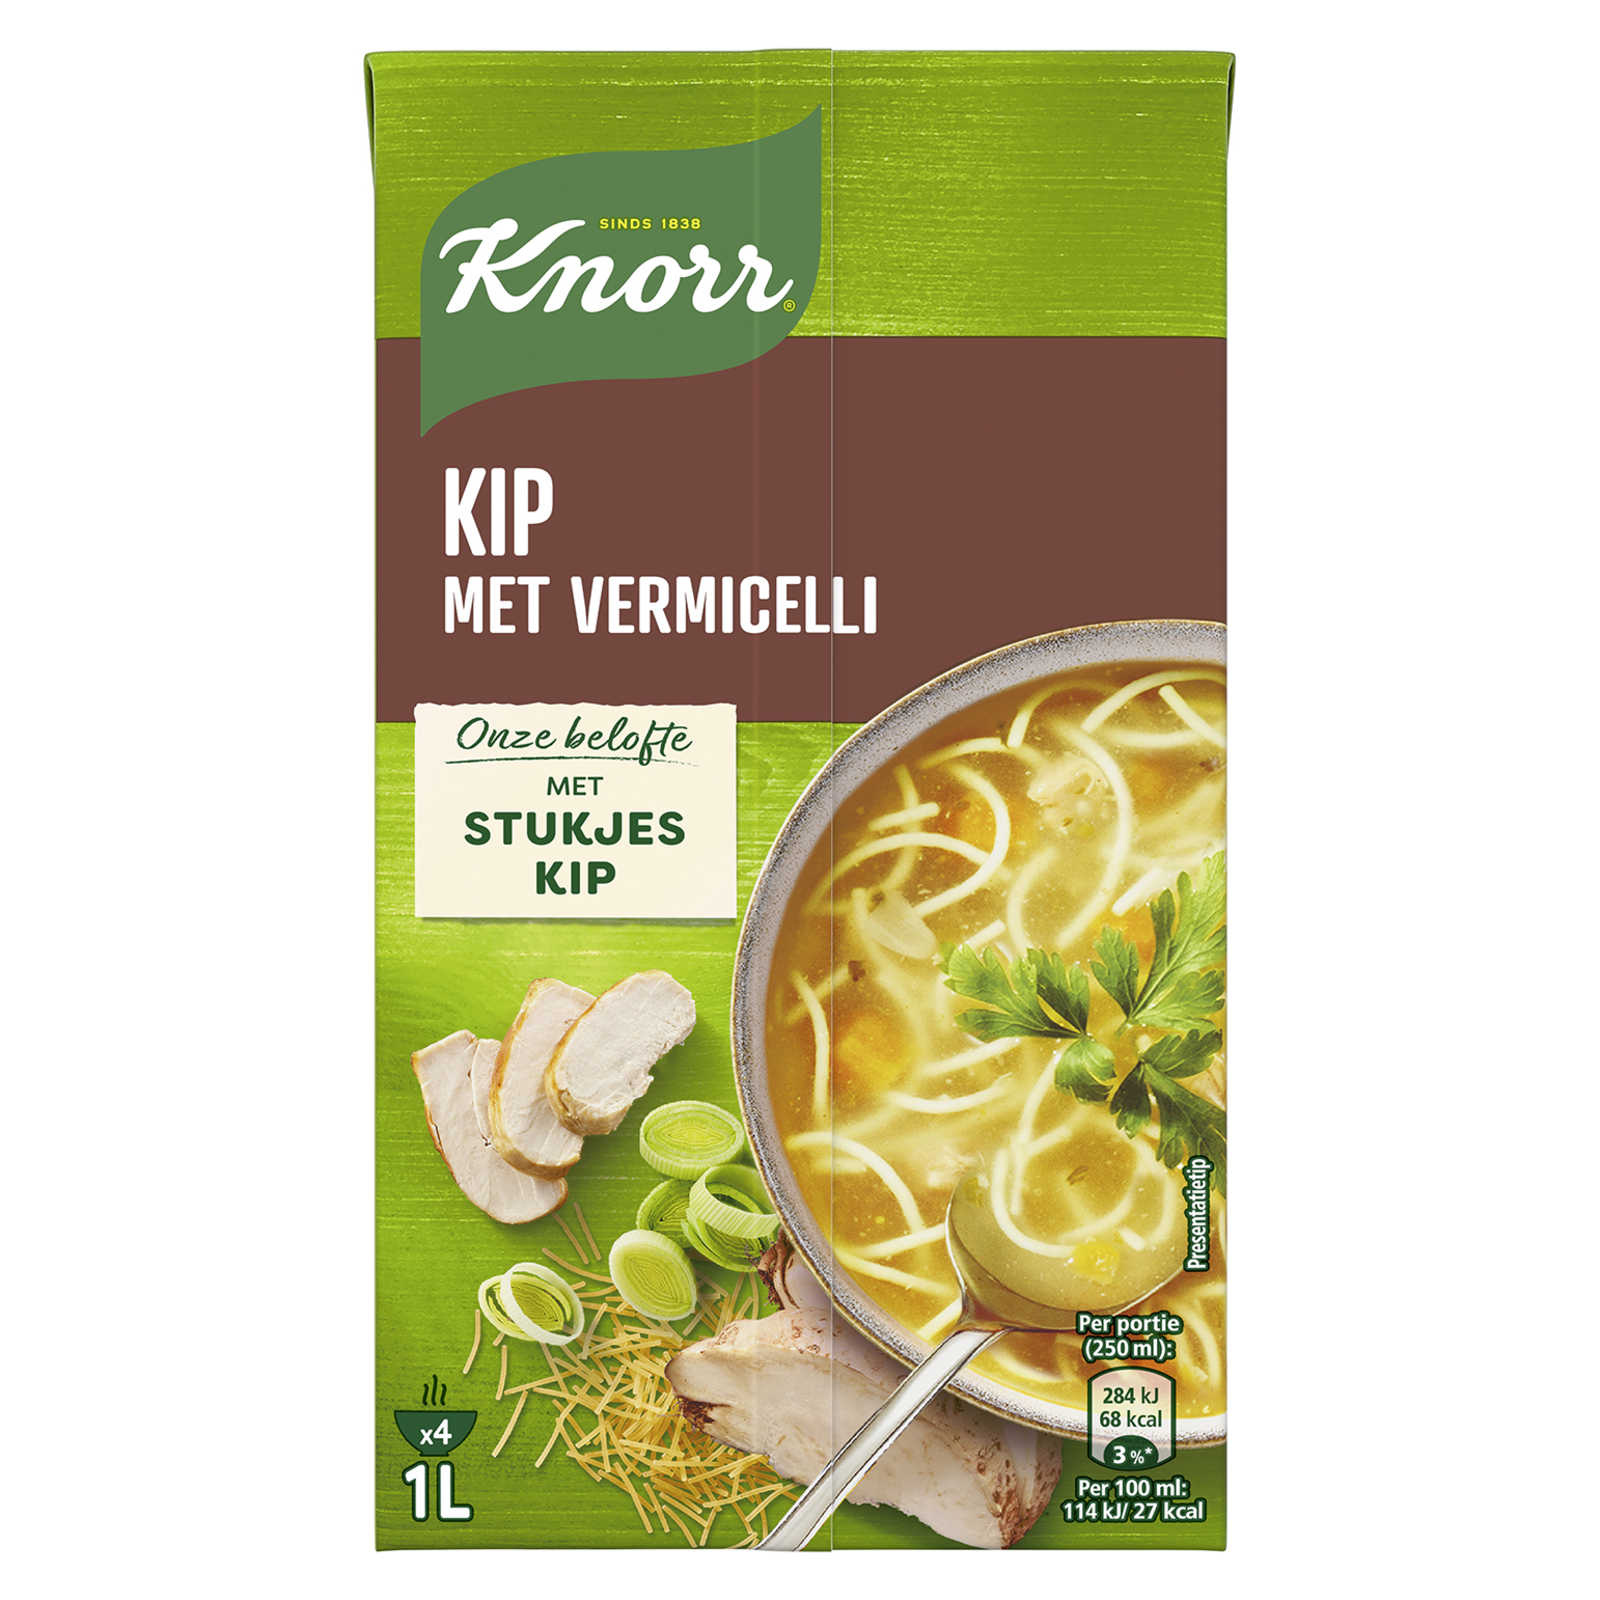 Knorr-Grootmoeders Geheim